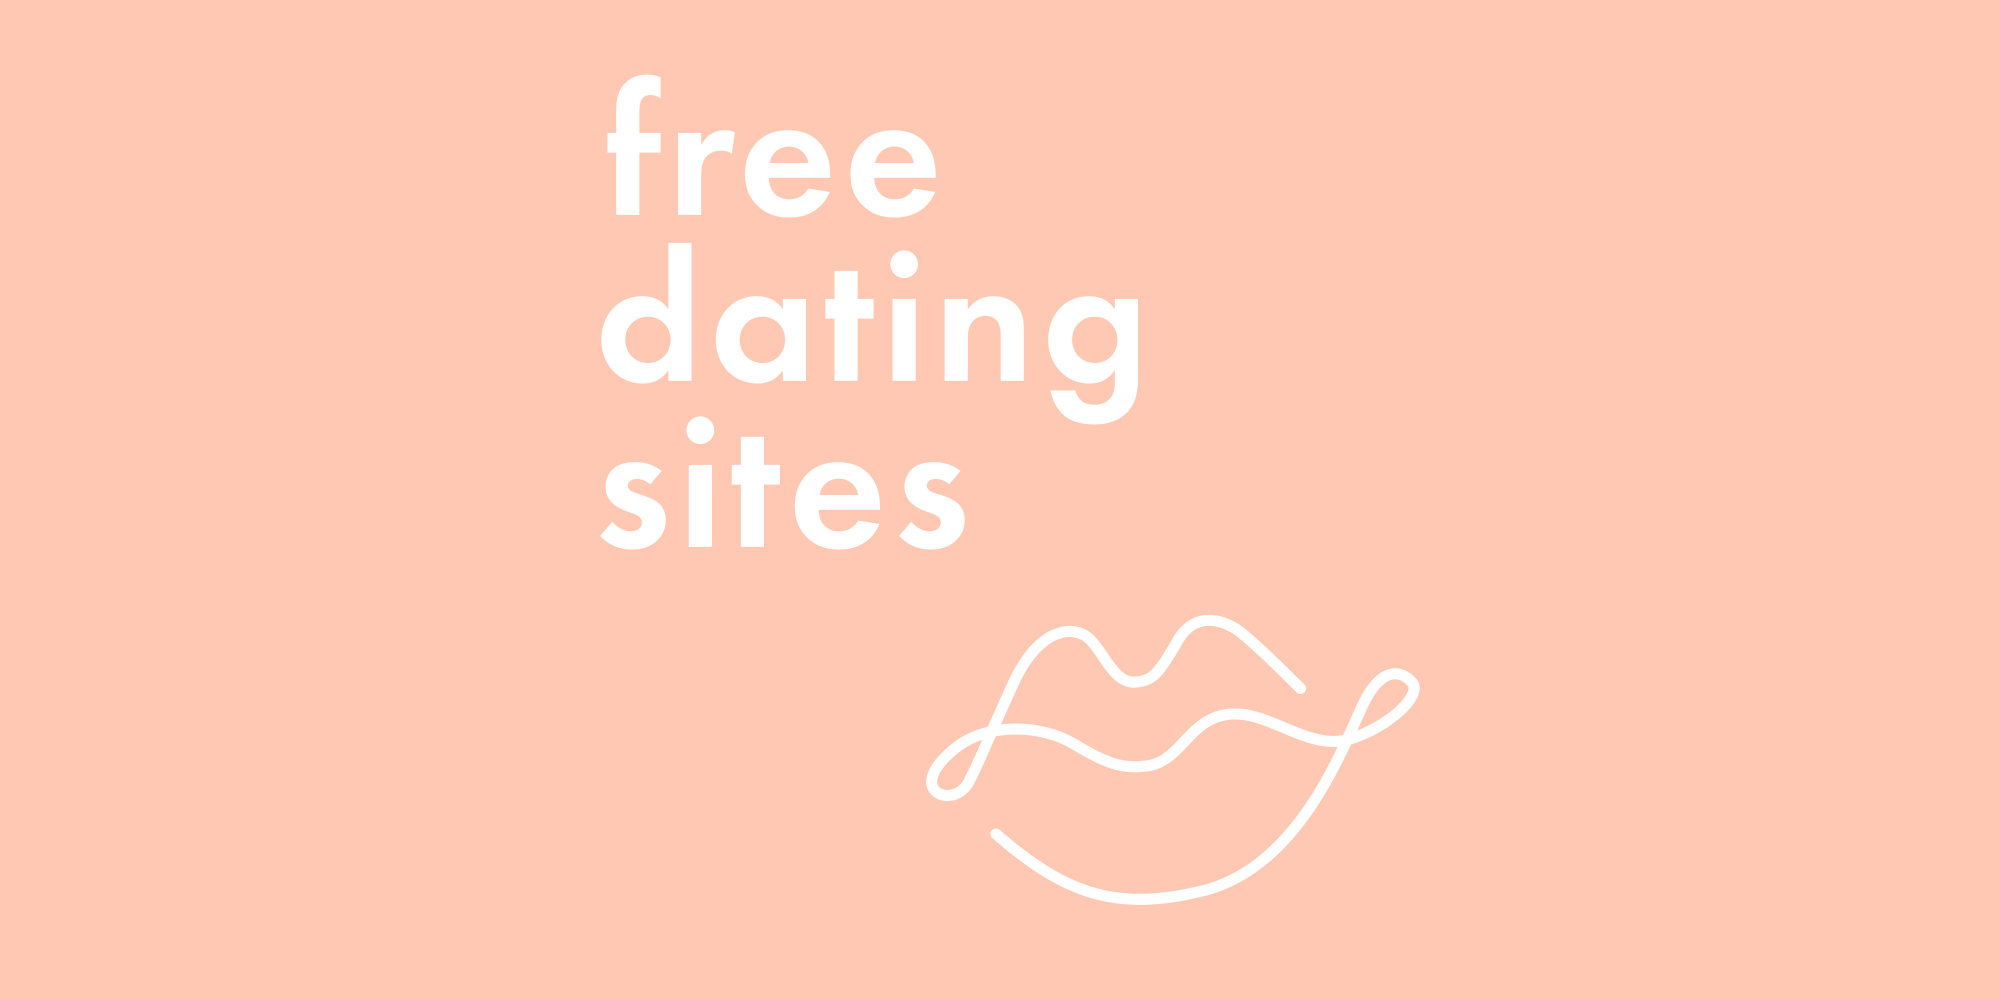 Site ul gratuit de dating in Londra Statistici Dating Site